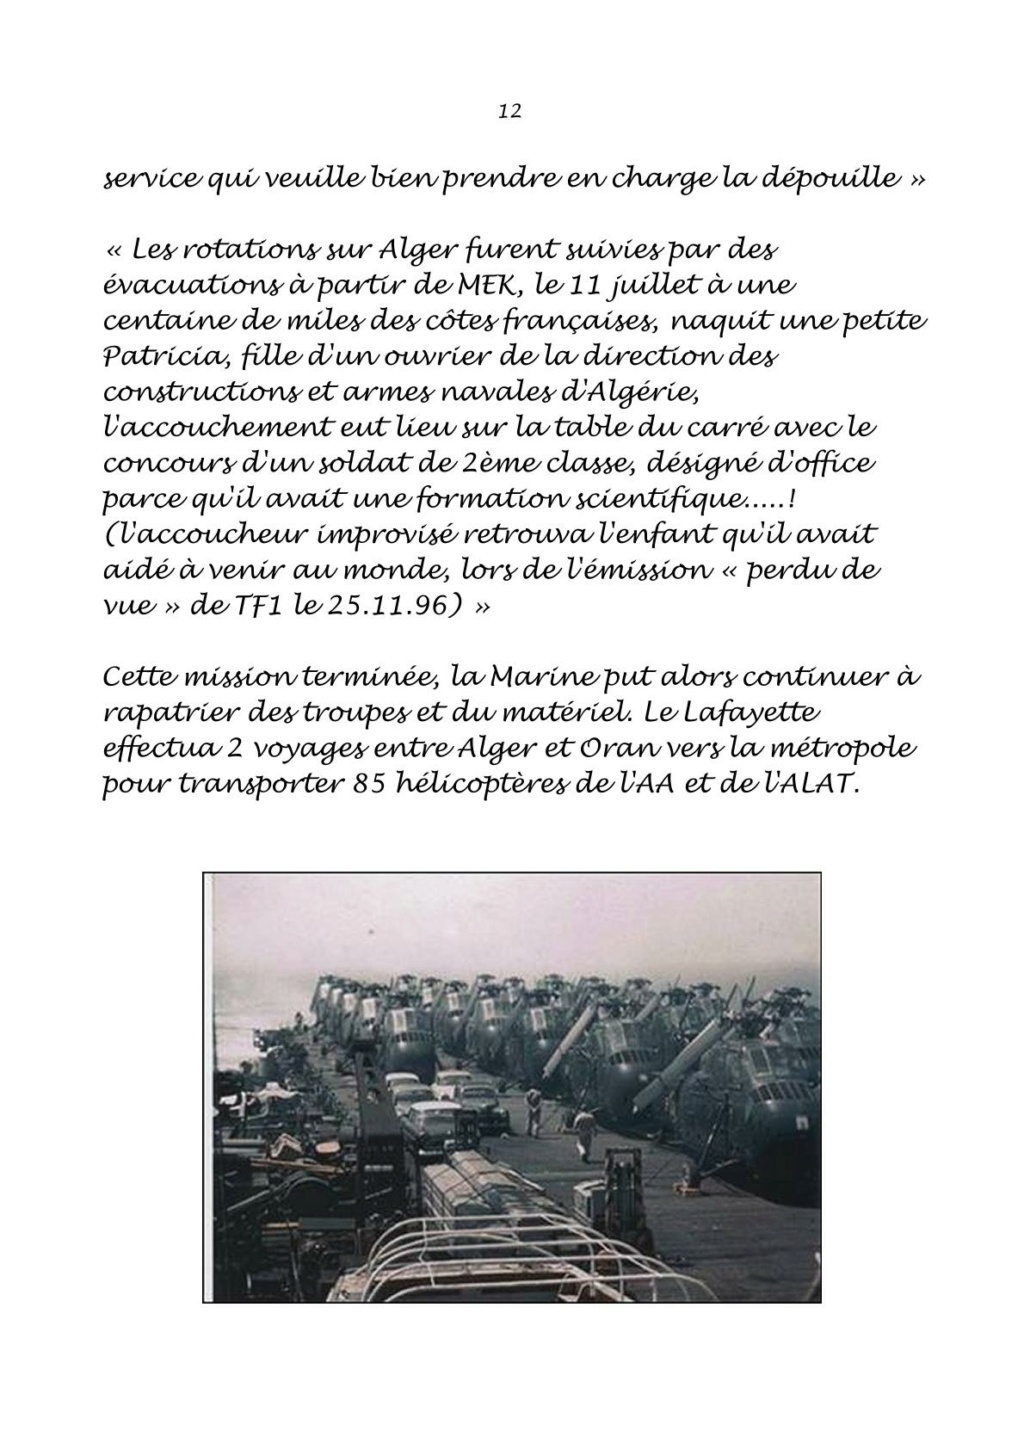 EVACUATION ALGERIE par la MARINE en 1962 1111